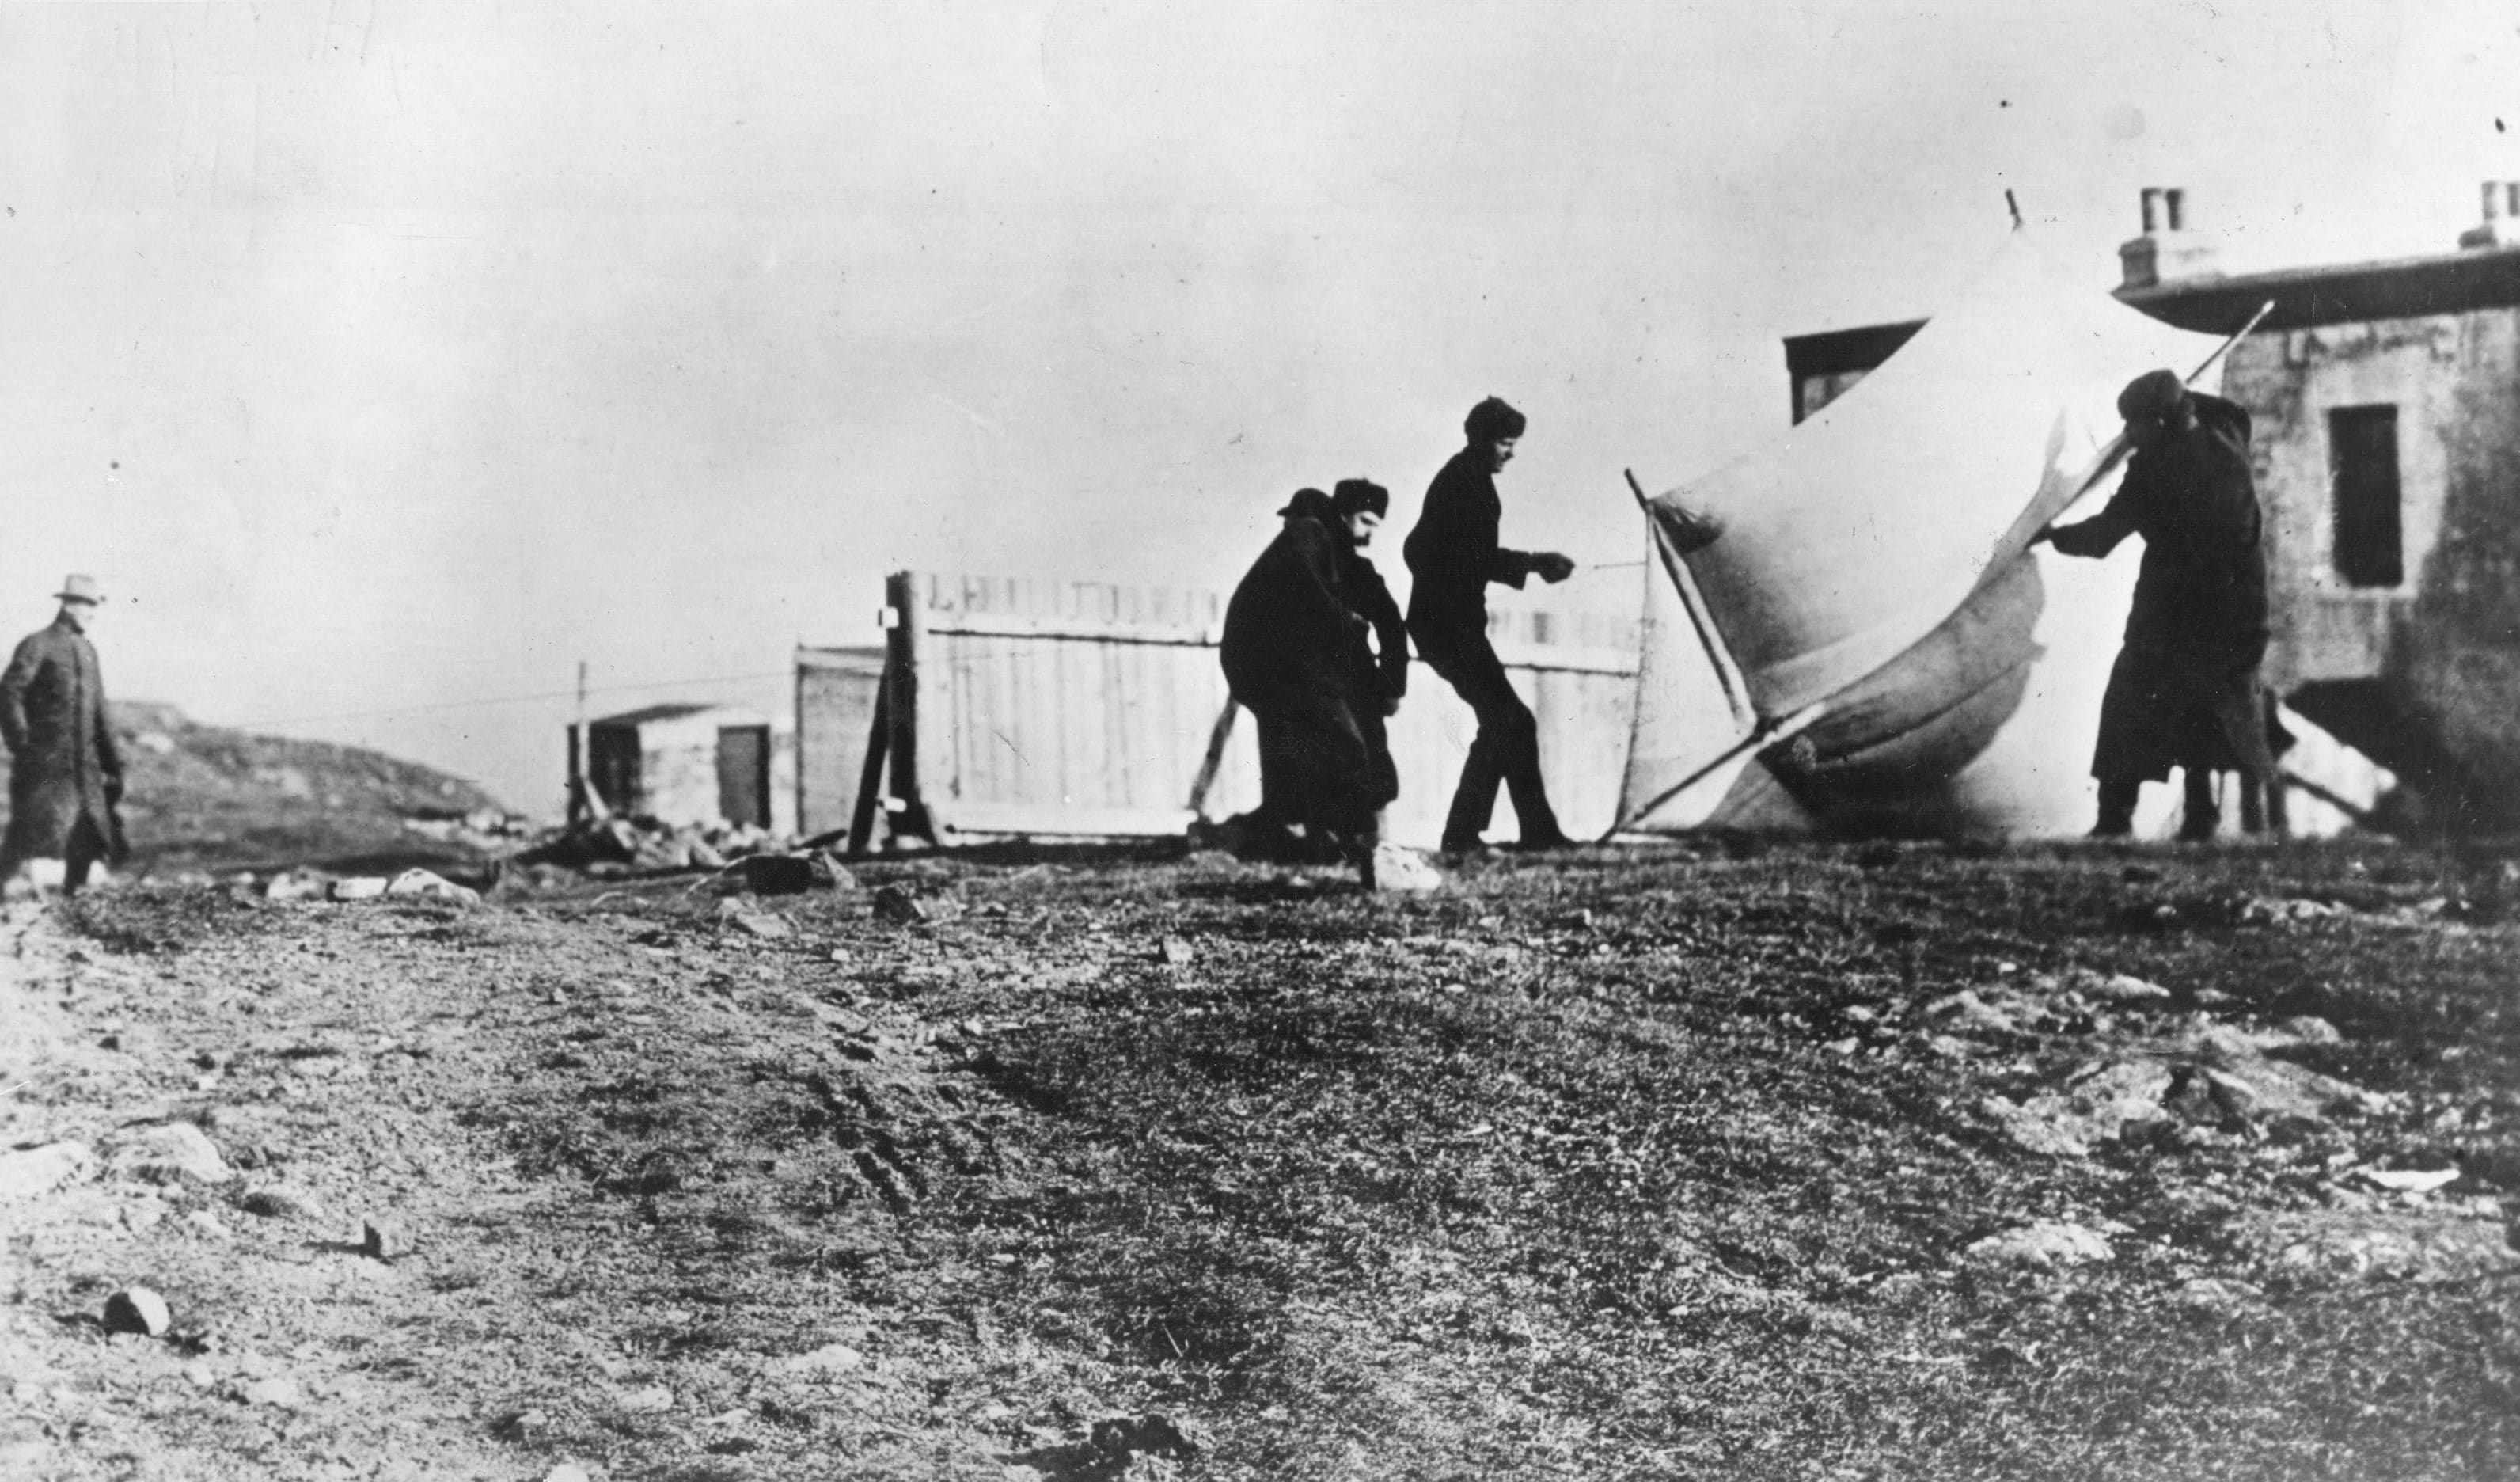 12 dicembre 1901: preparazione dell'aquilone che supportava l'antenna ricevente per la ricezione dei primi segnali telegrafici transatlantici